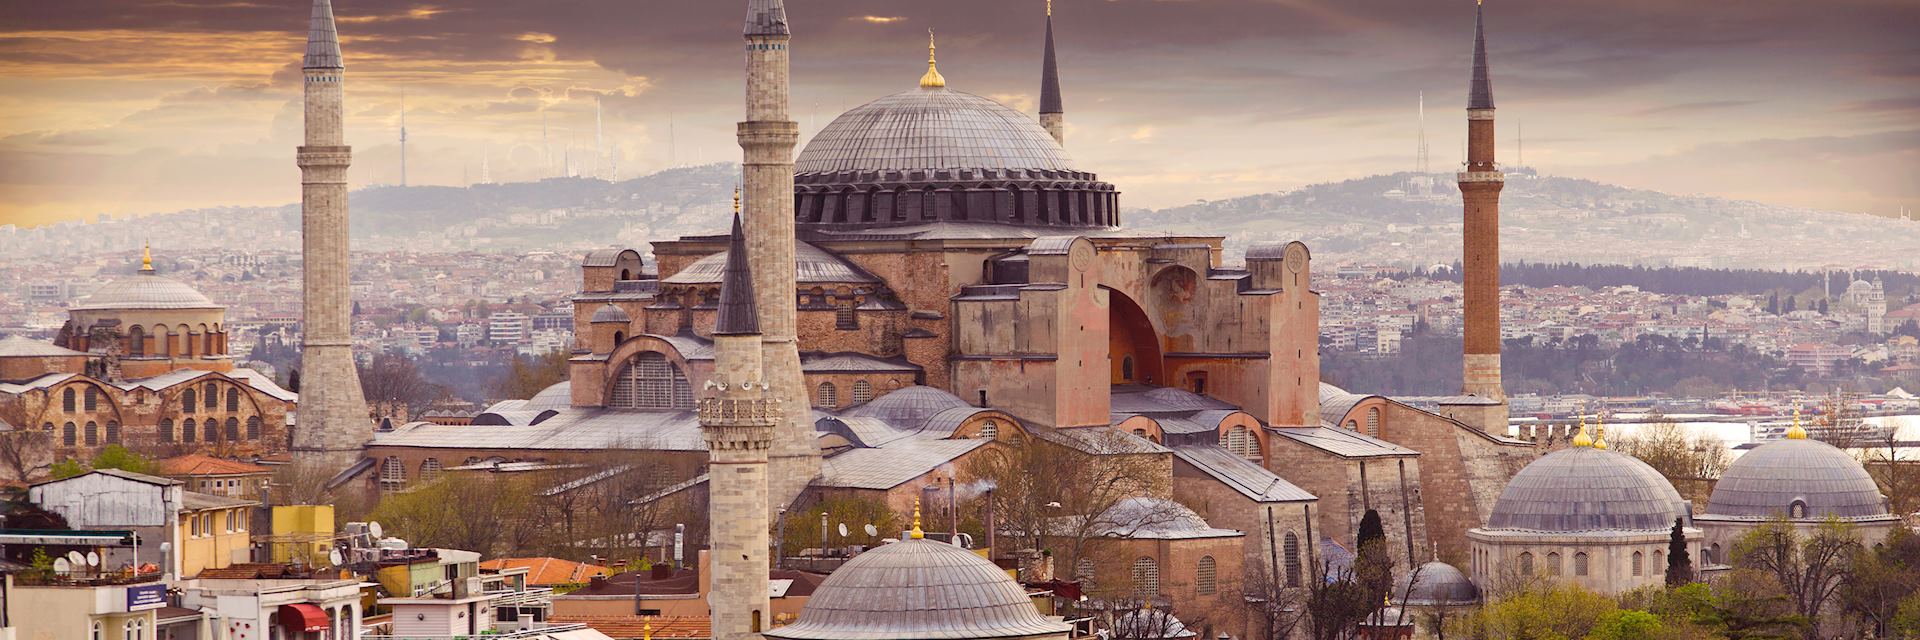 Hagia Sophia Mosque at sunset